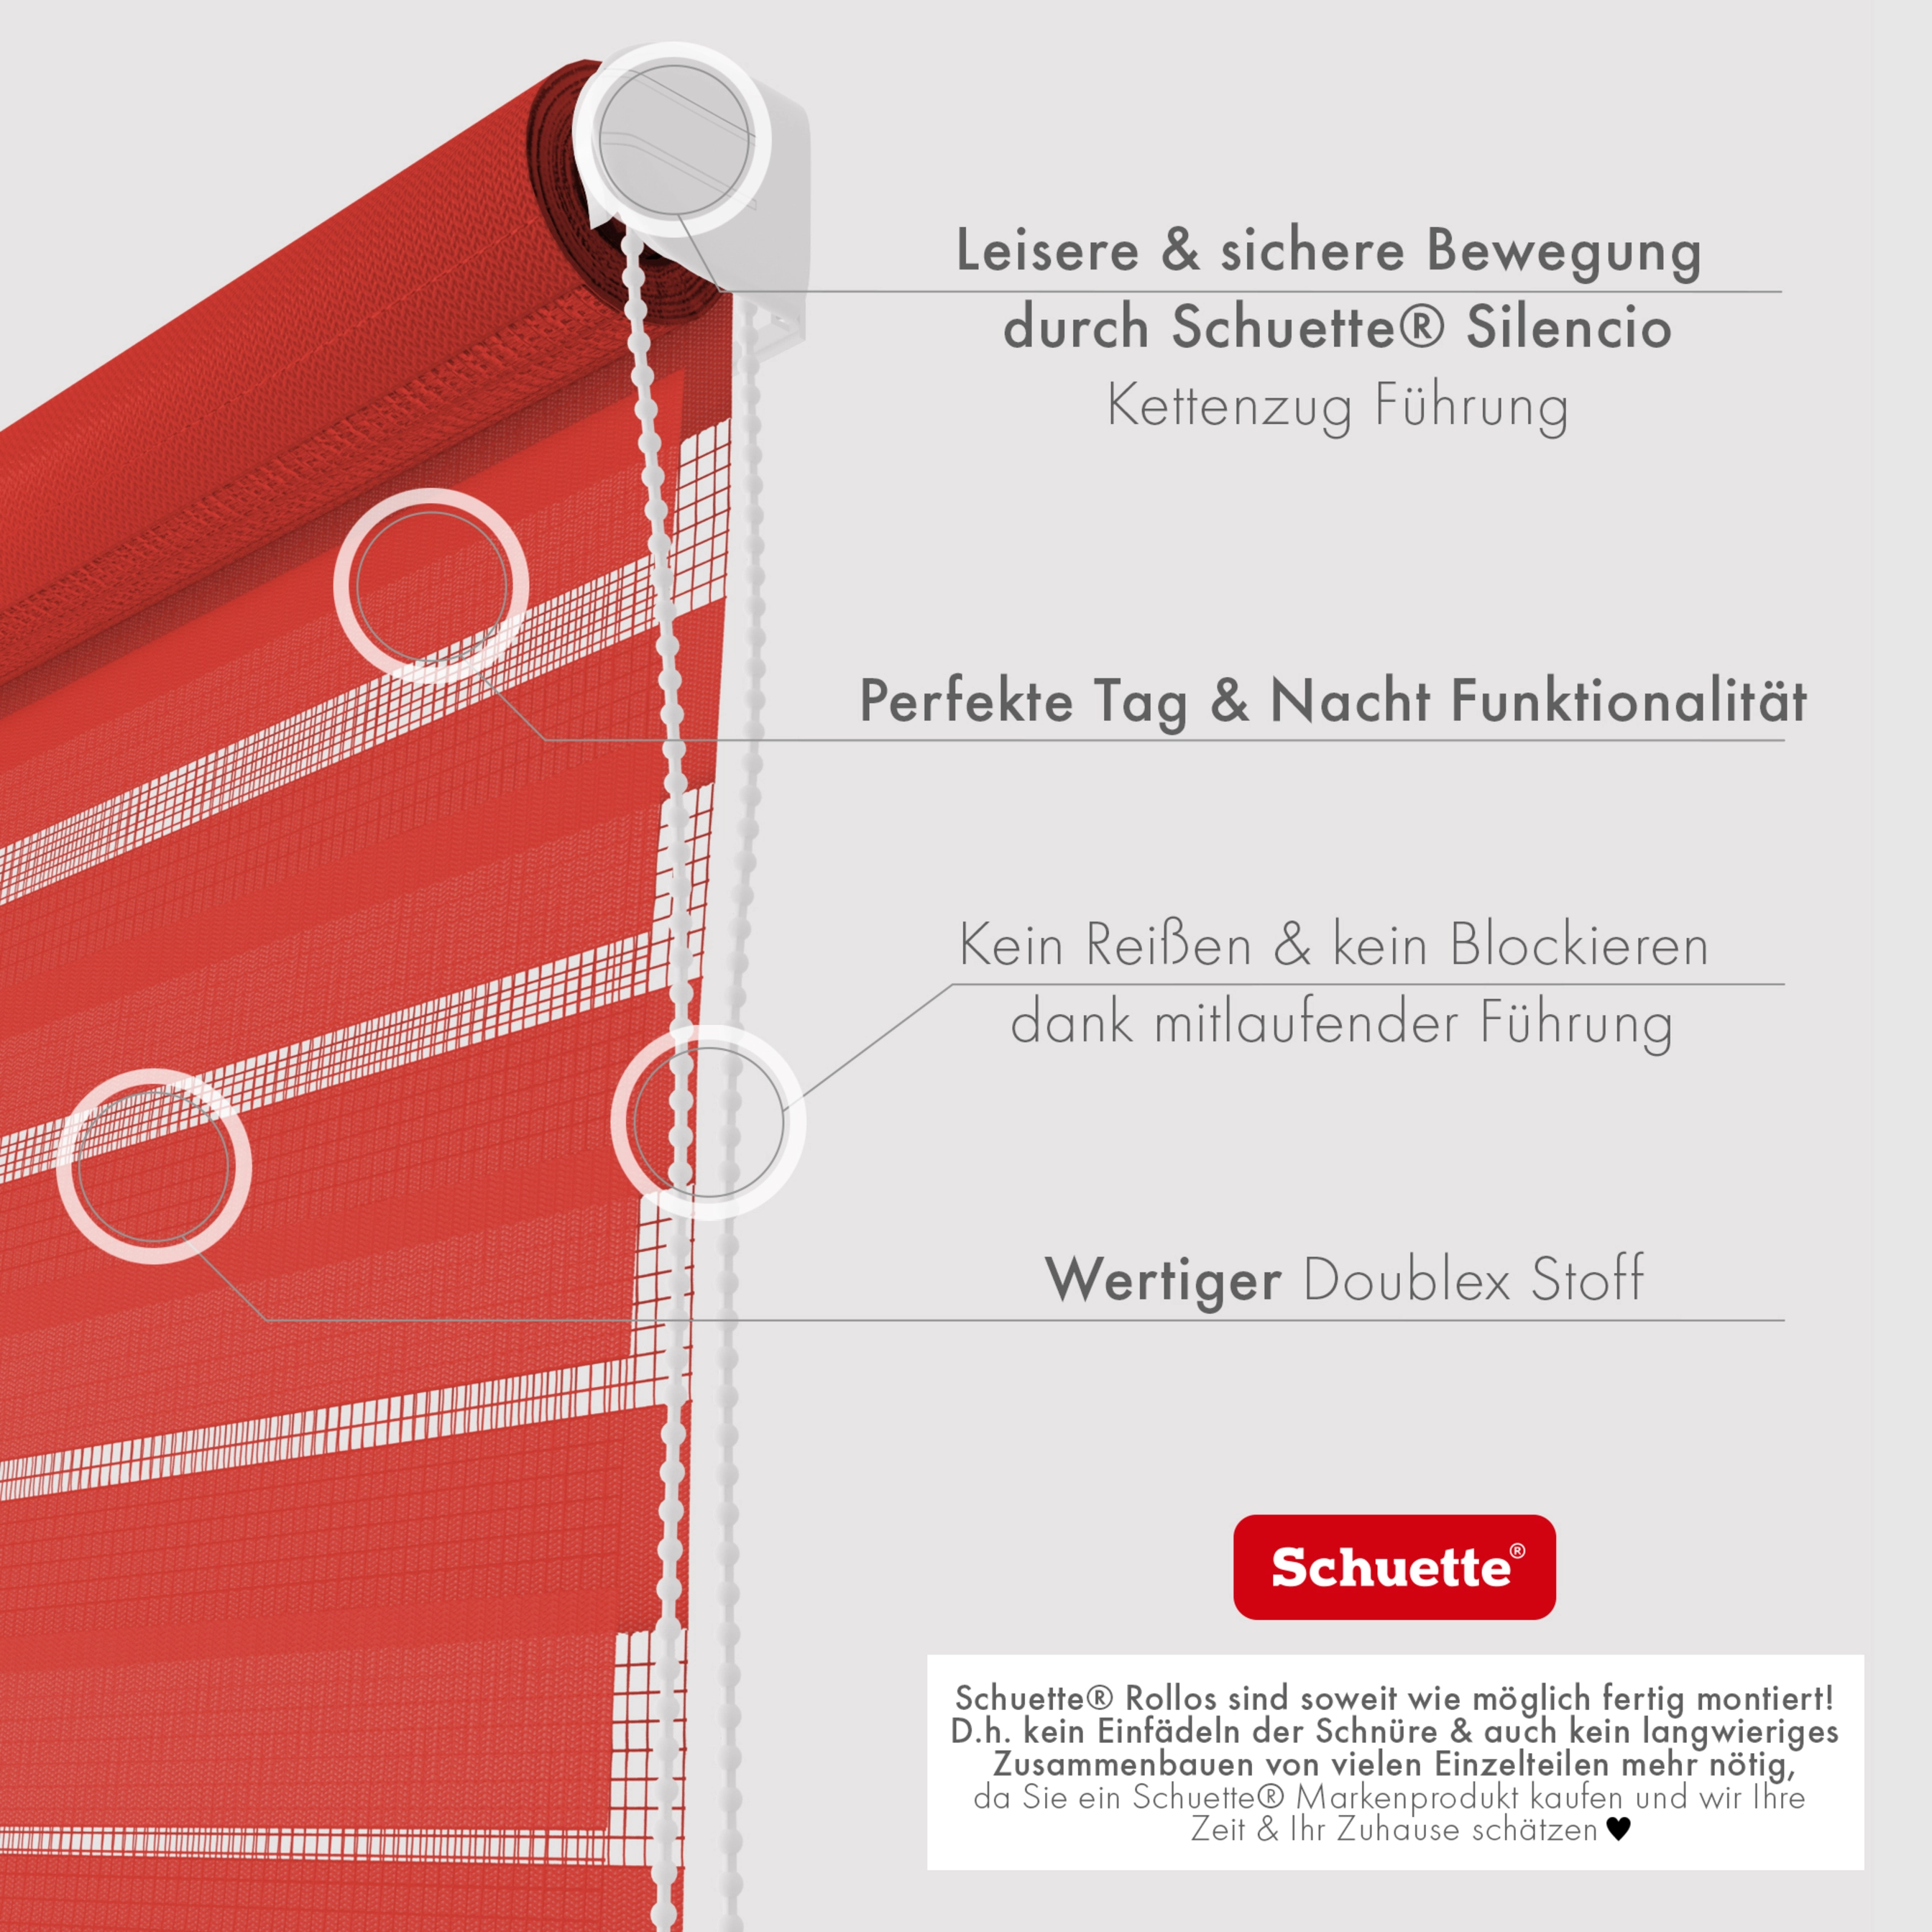 Schuette® Rollo ohne Bohren & mit Bohren 2in1 • Nacht Doppelrollo Kollektion: Red Rose (Rot) • Profilfarbe: Weiß